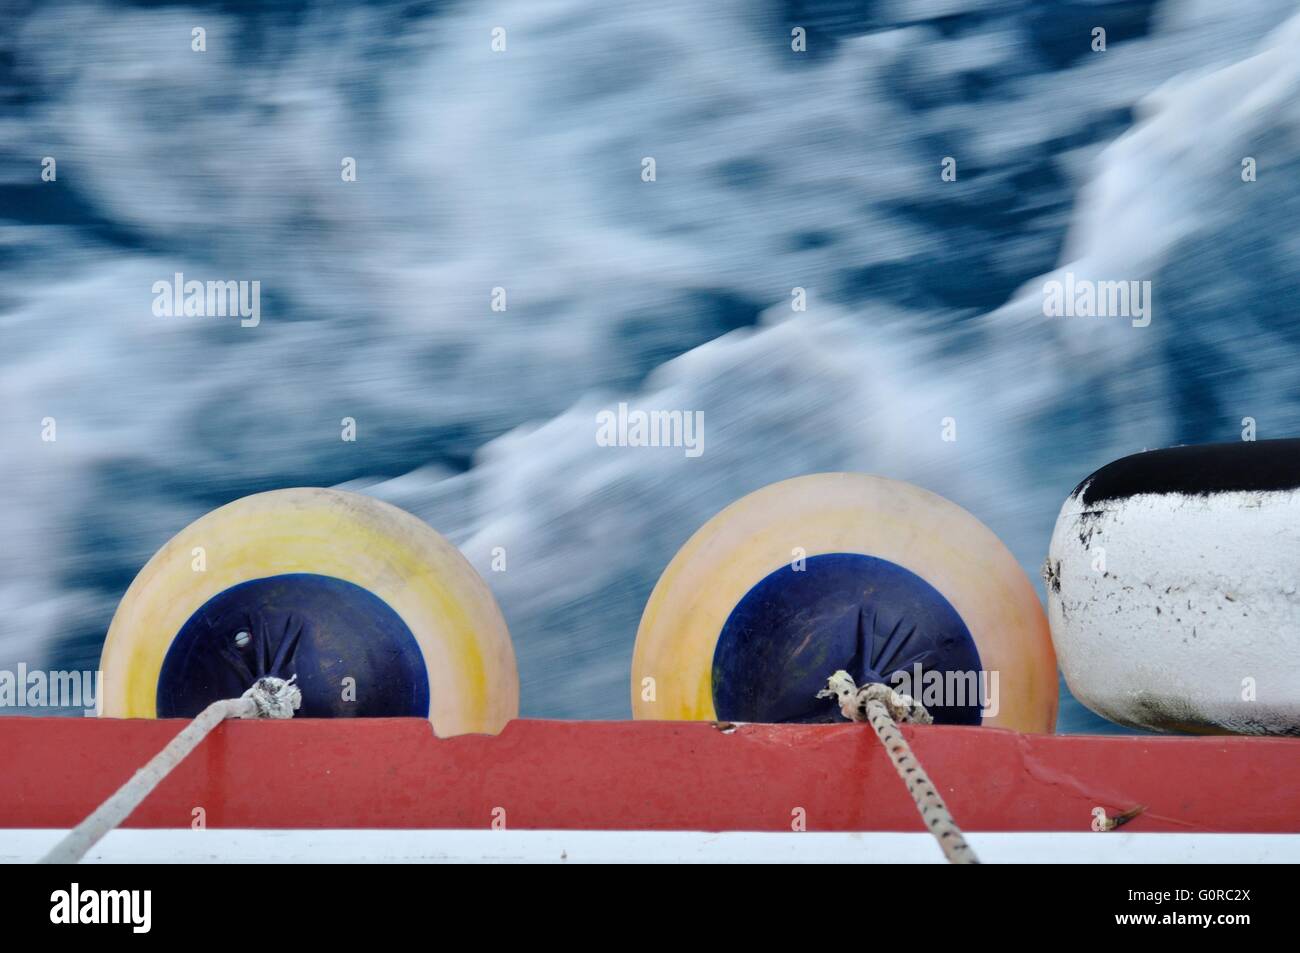 La boa sul corpo della nave in movimento. sventolano mare adriatico nella parte superiore dell'immagine. l'immagine orizzontale Foto Stock